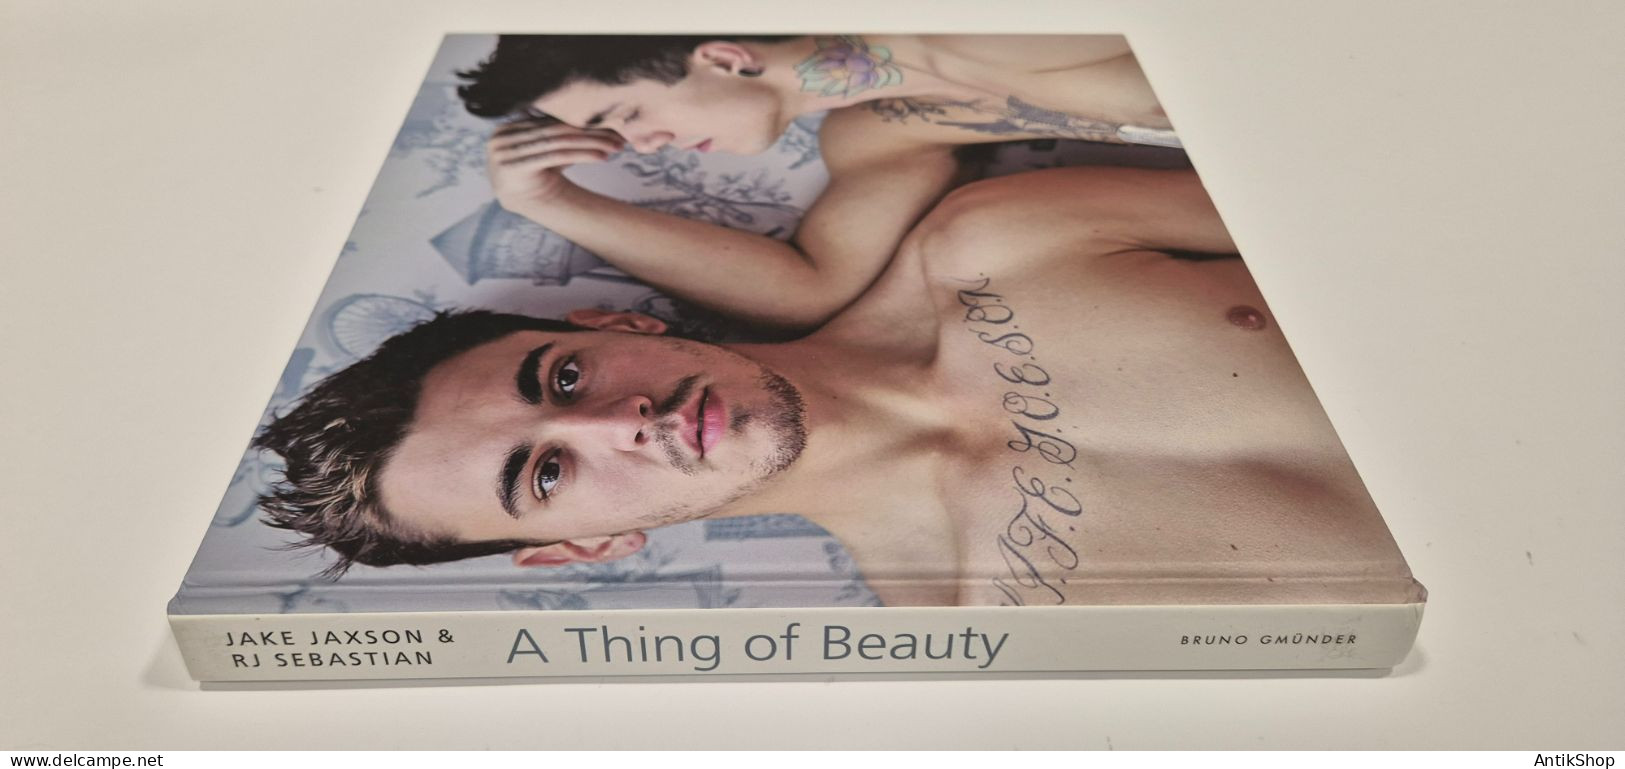 Jake Jackson & RJ Sebastian - A Thing Of Beauty - 2014 New Gay Sex Erotik - Schöne Künste